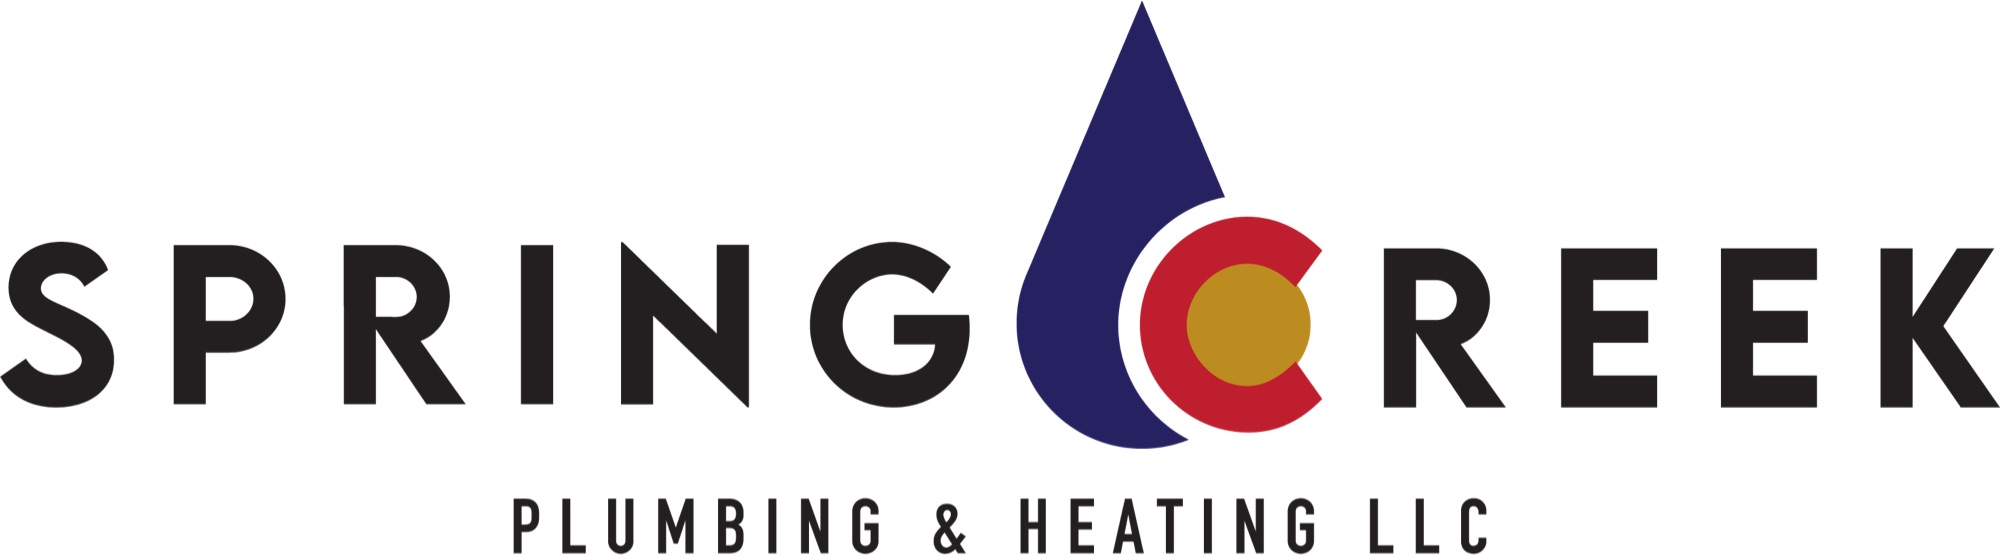 Spring Creek Plumbing & Heating, LLC Logo